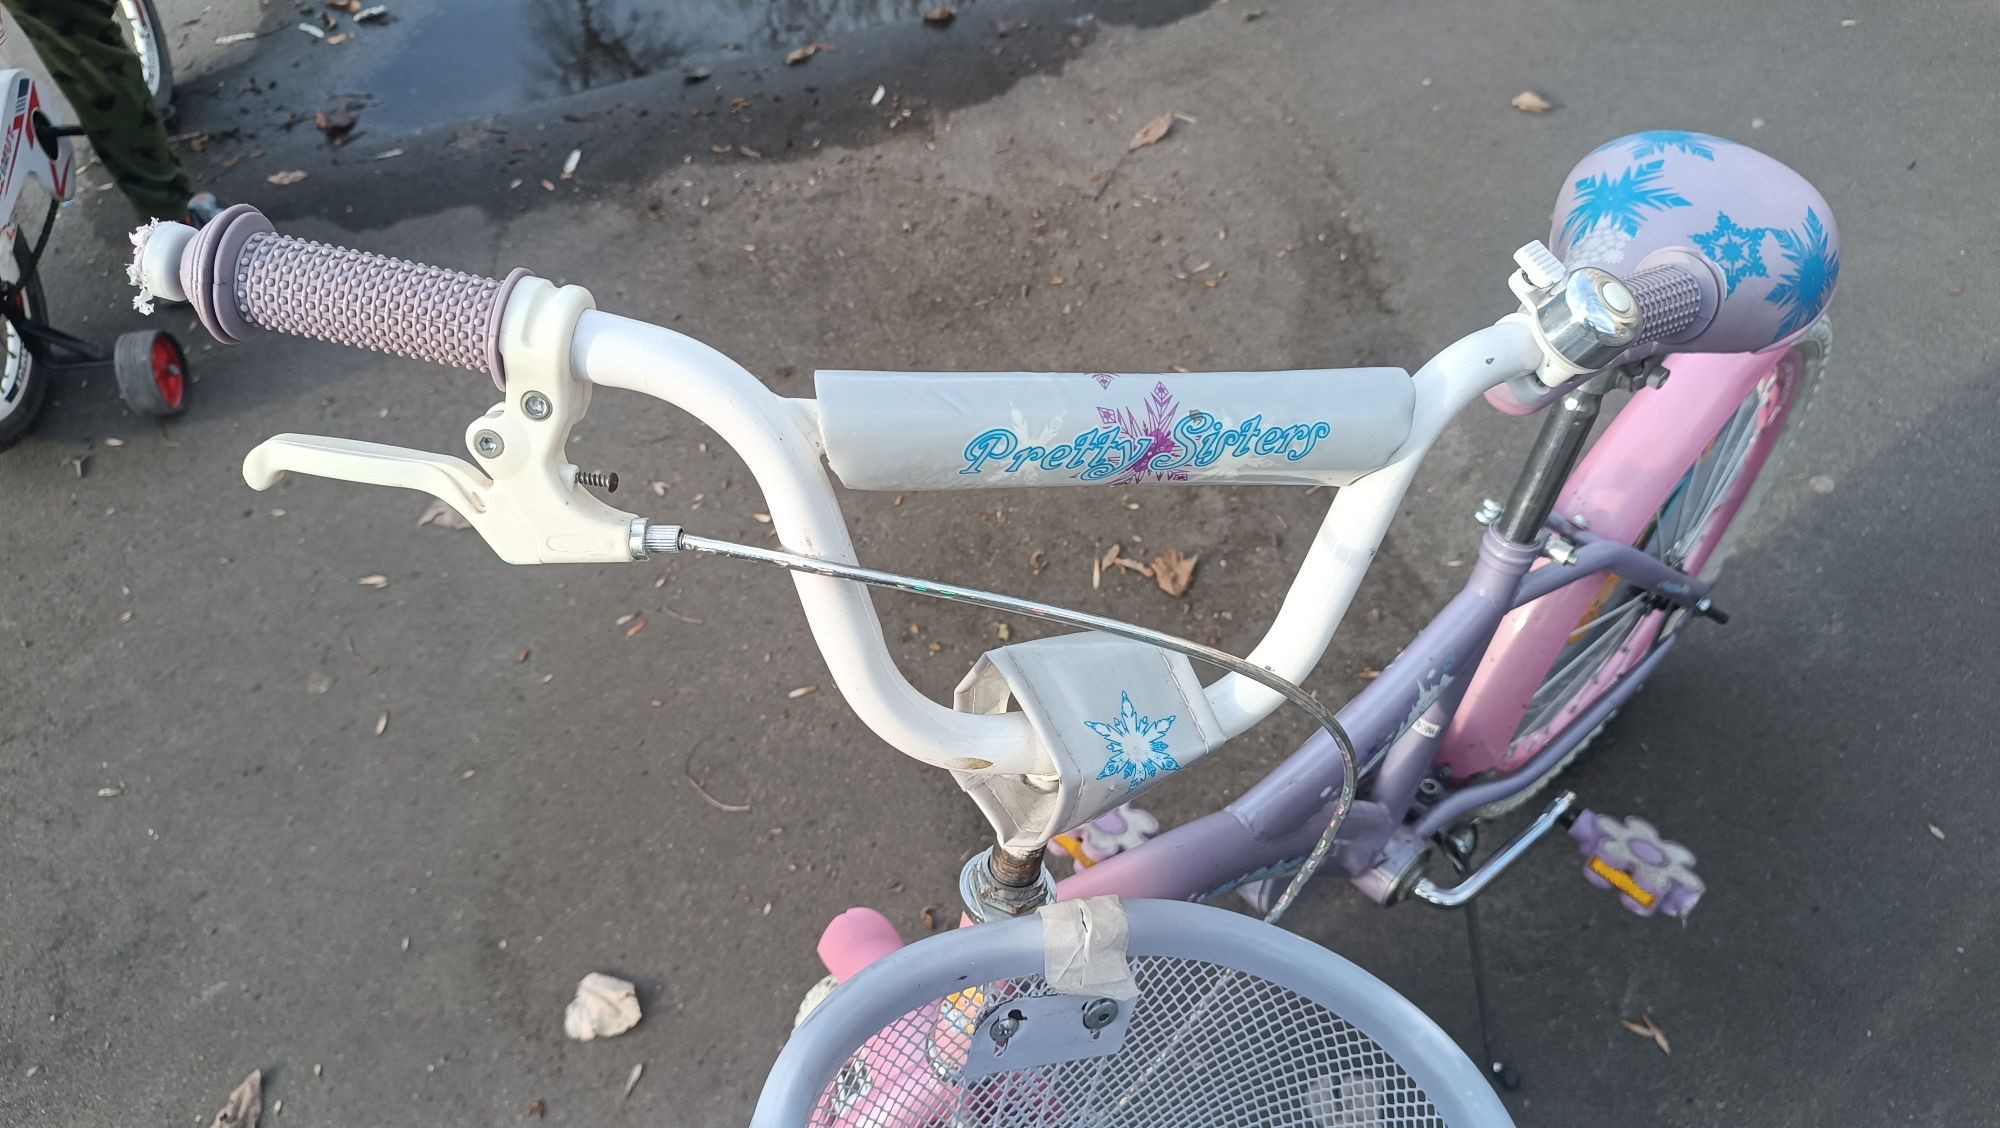 Велосипед Эльза "Холодное сердце"